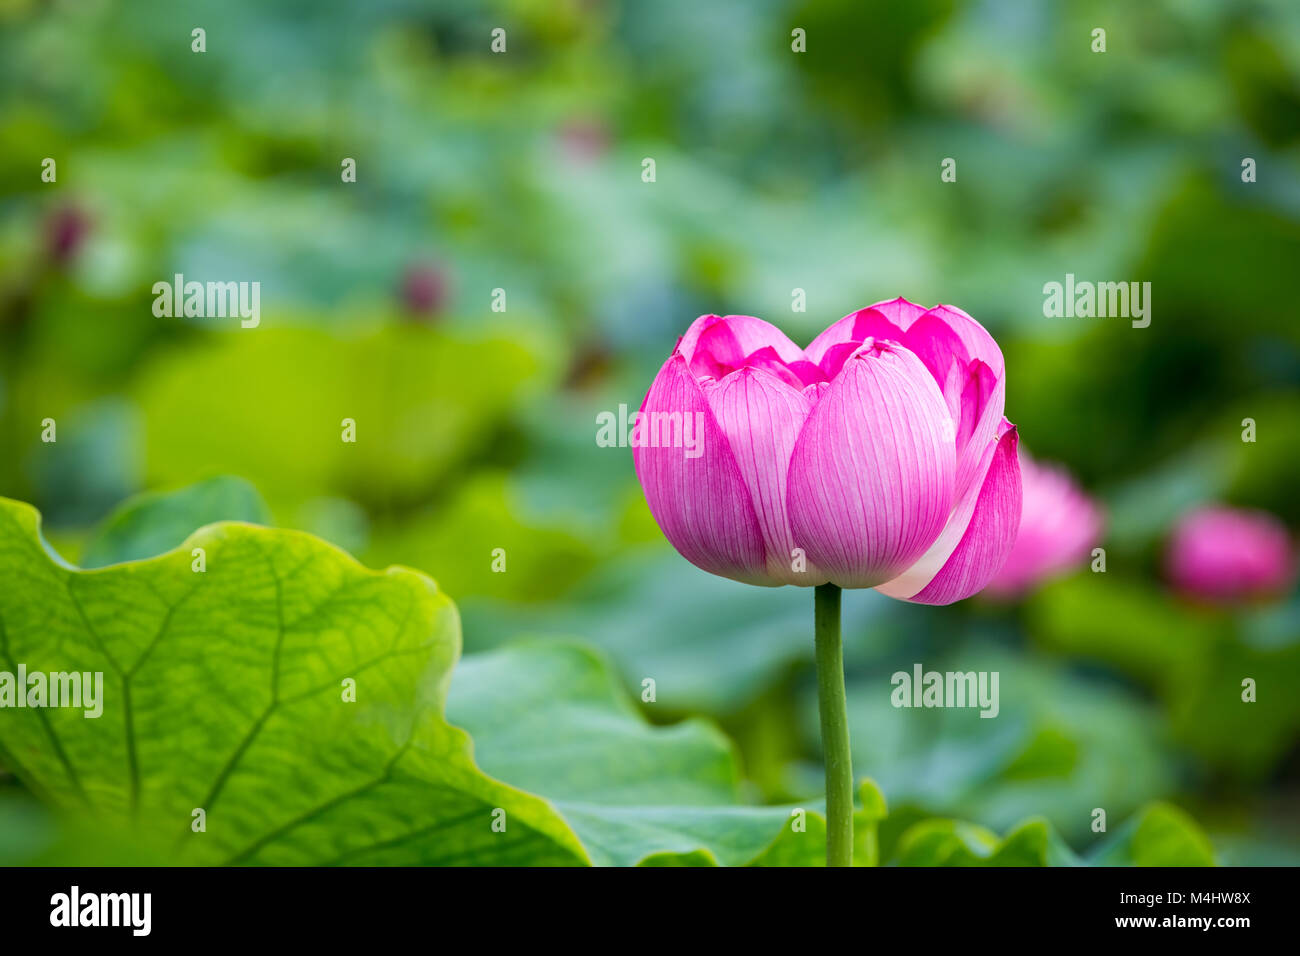 Gros plan de la fleur de lotus rose Banque D'Images